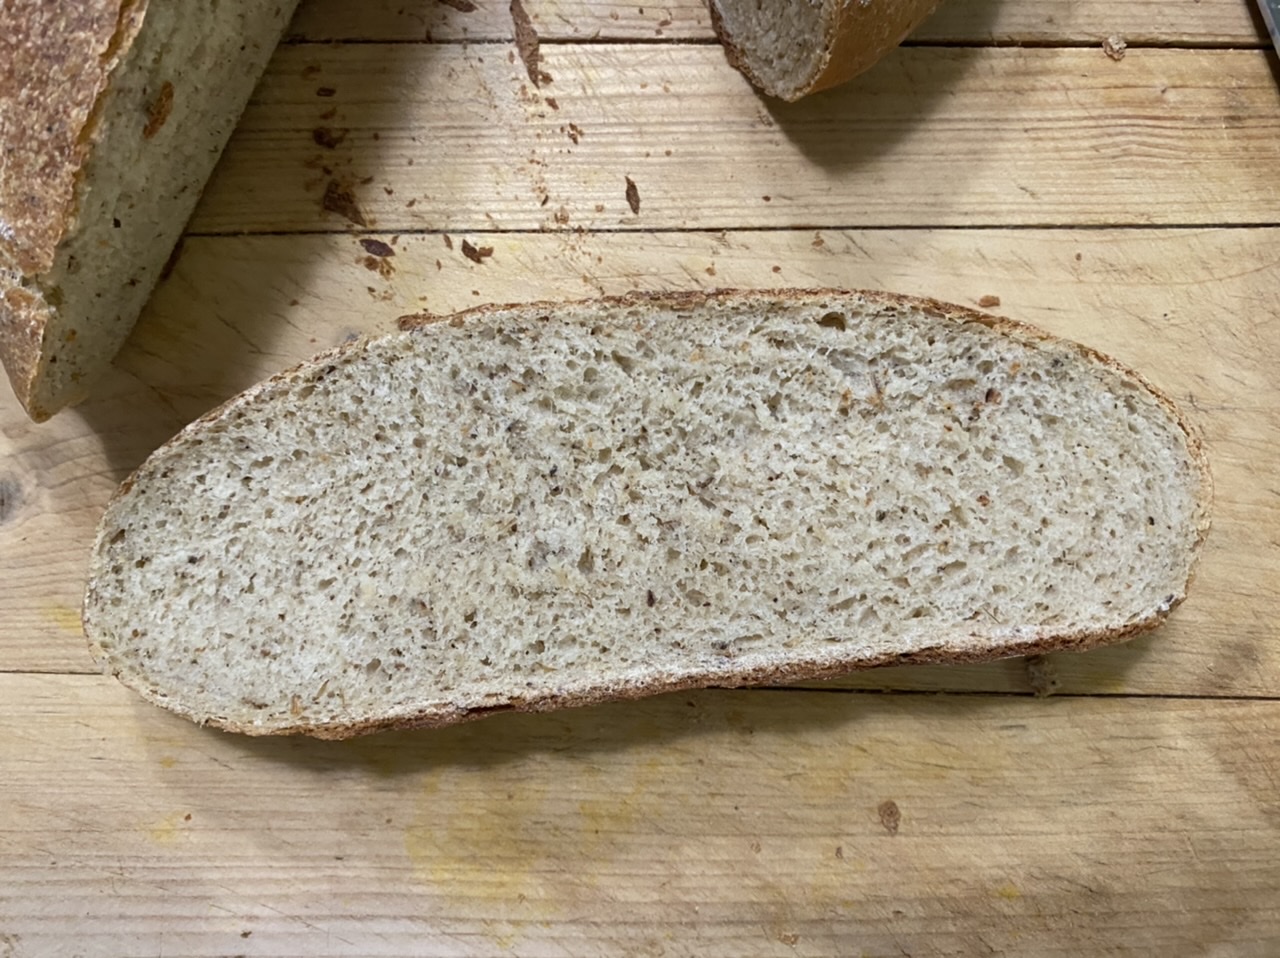 D269A2D4 F0DD 4004 BADE 53E515517F2D - How to Make the Best Rustic Dutch Oven Crispy Bread